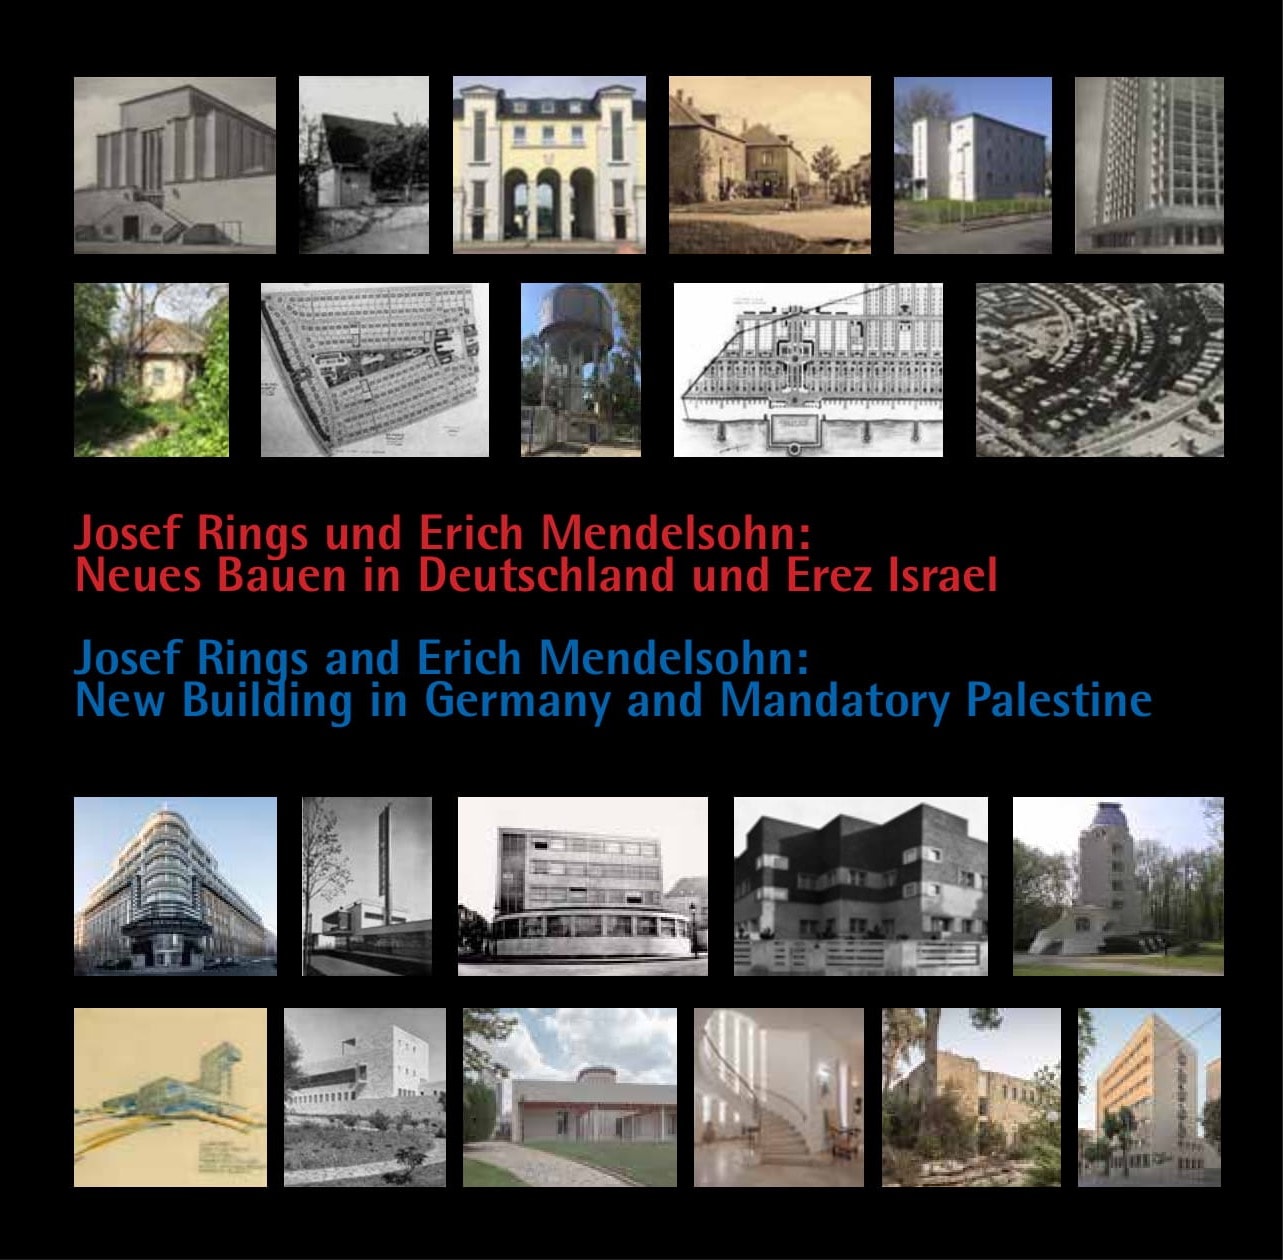 יוסף רינגס ואריך מנדלסון: “בנייה חדשה” בגרמניה ובפלשתינה-א”י